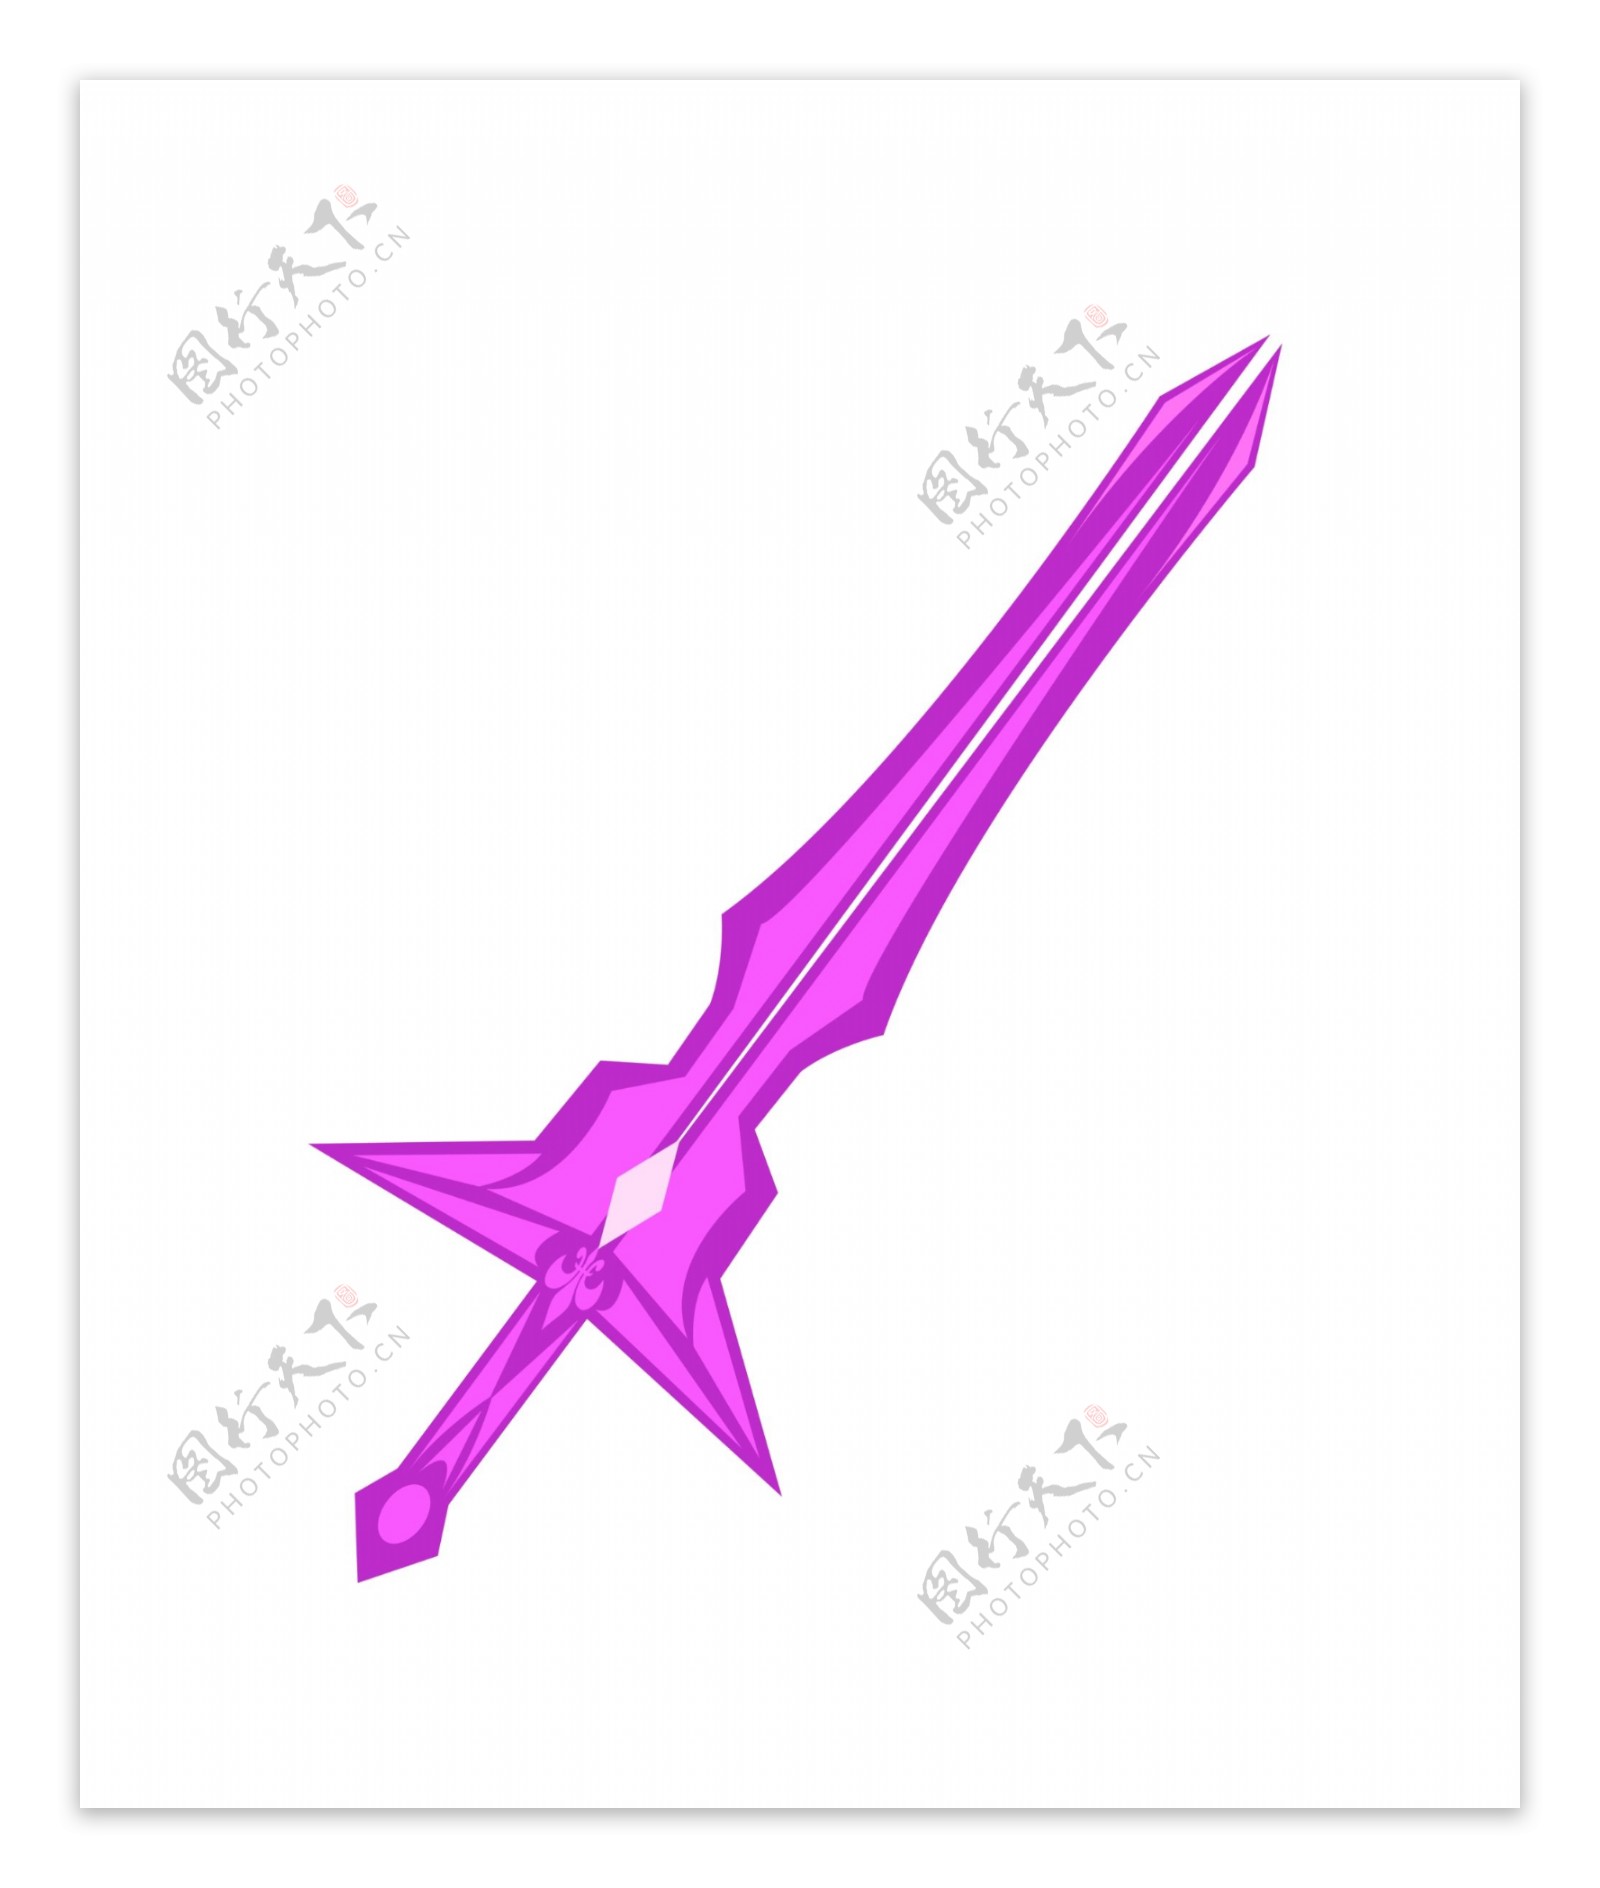 武器紫色仙剑插画